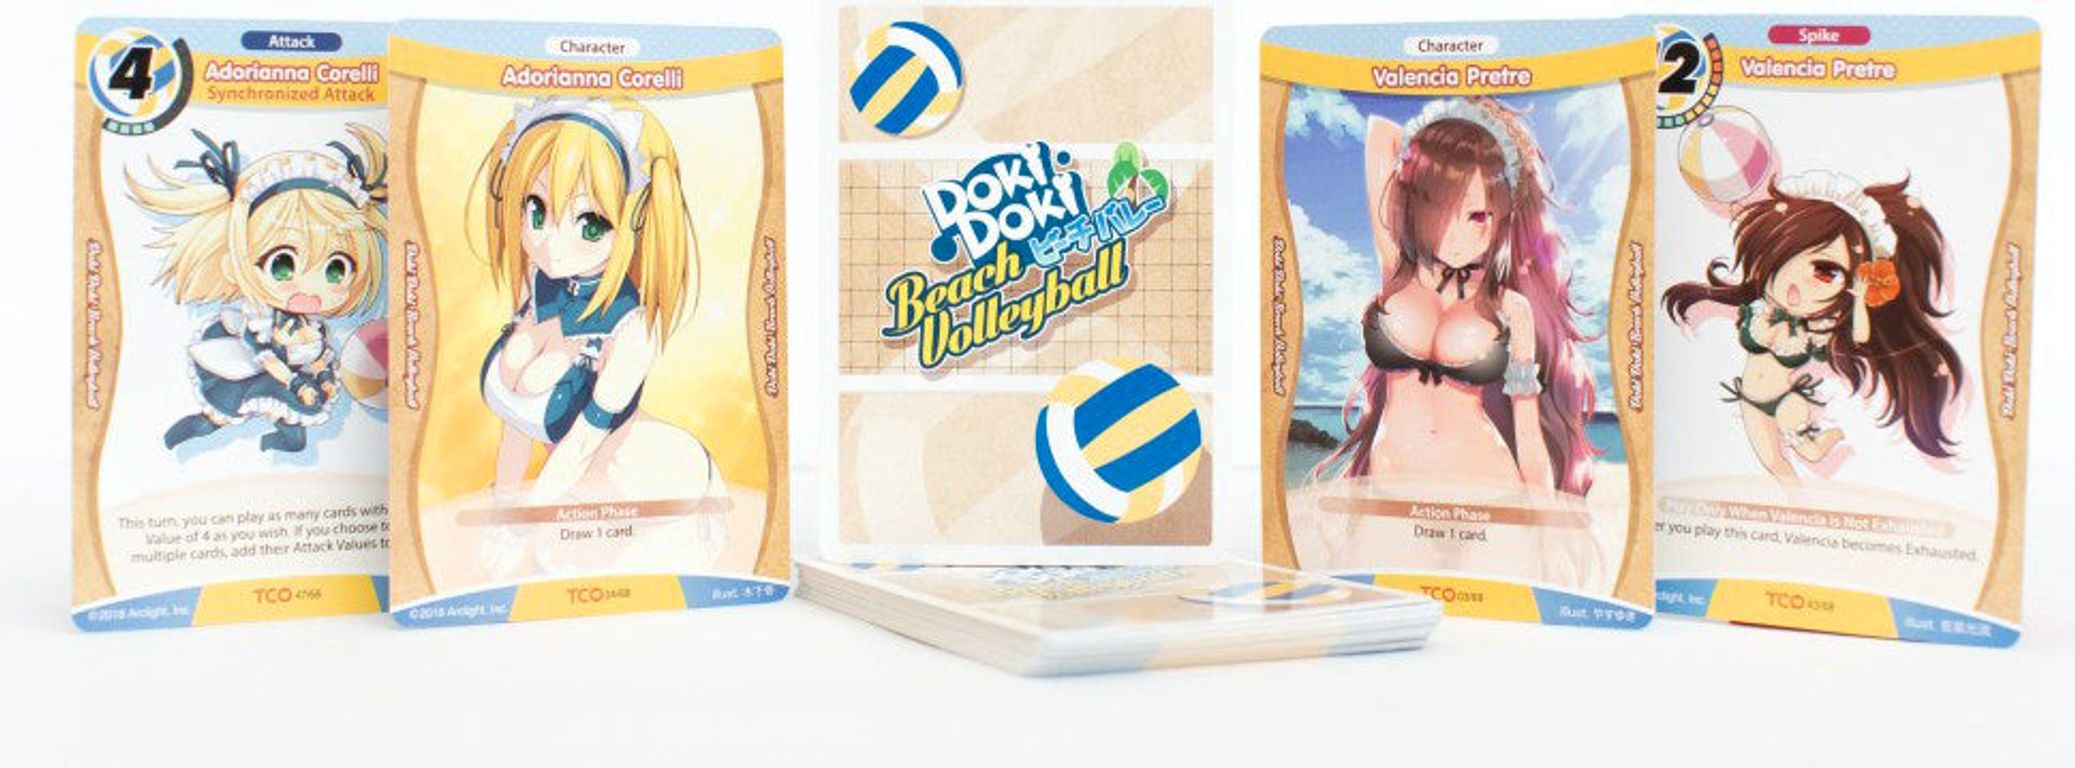 Tanto Cuore: Doki Doki Beach Volleyball kaarten